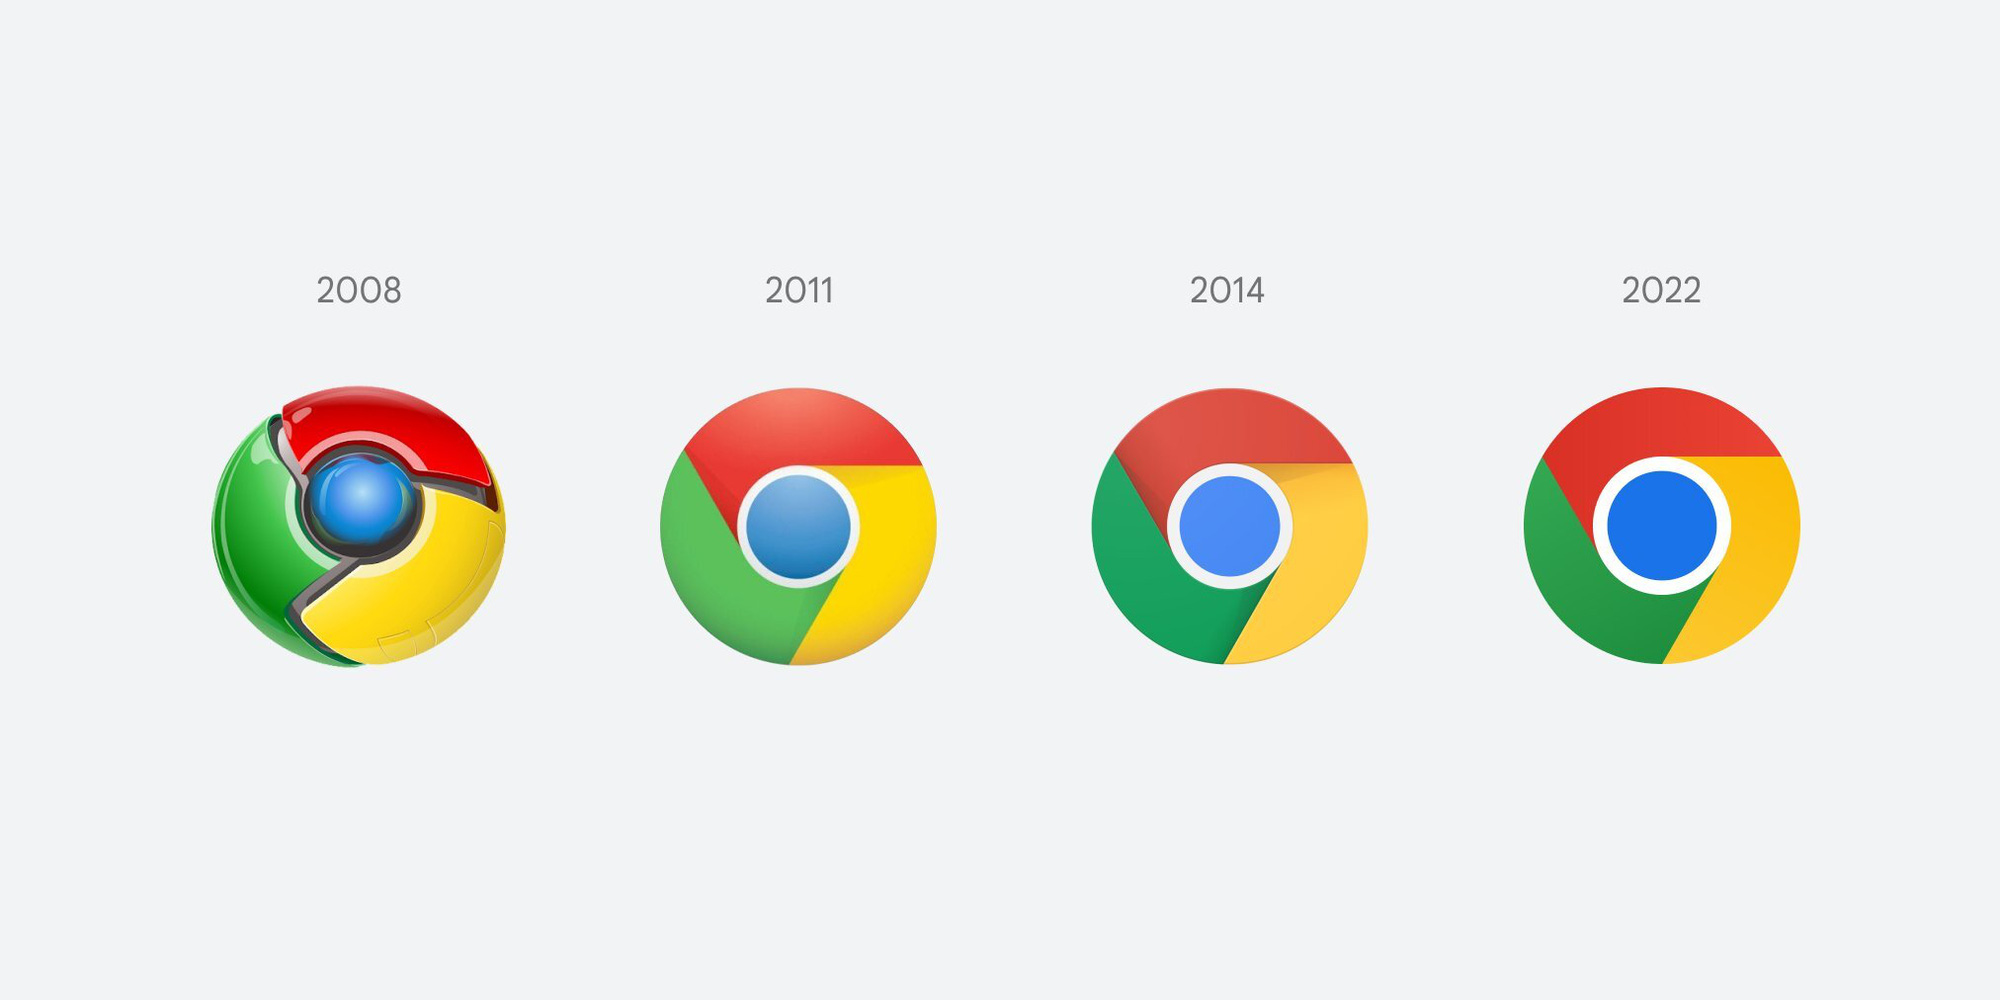 Xem logo mới của Google Chrome năm 2024 sẽ khiến bạn bất ngờ với sự thay đổi tươi sáng và hiện đại. Logo mới thể hiện sự tiến bộ và khát vọng của Google Chrome trong việc mang đến trải nghiệm tốt nhất cho người dùng.